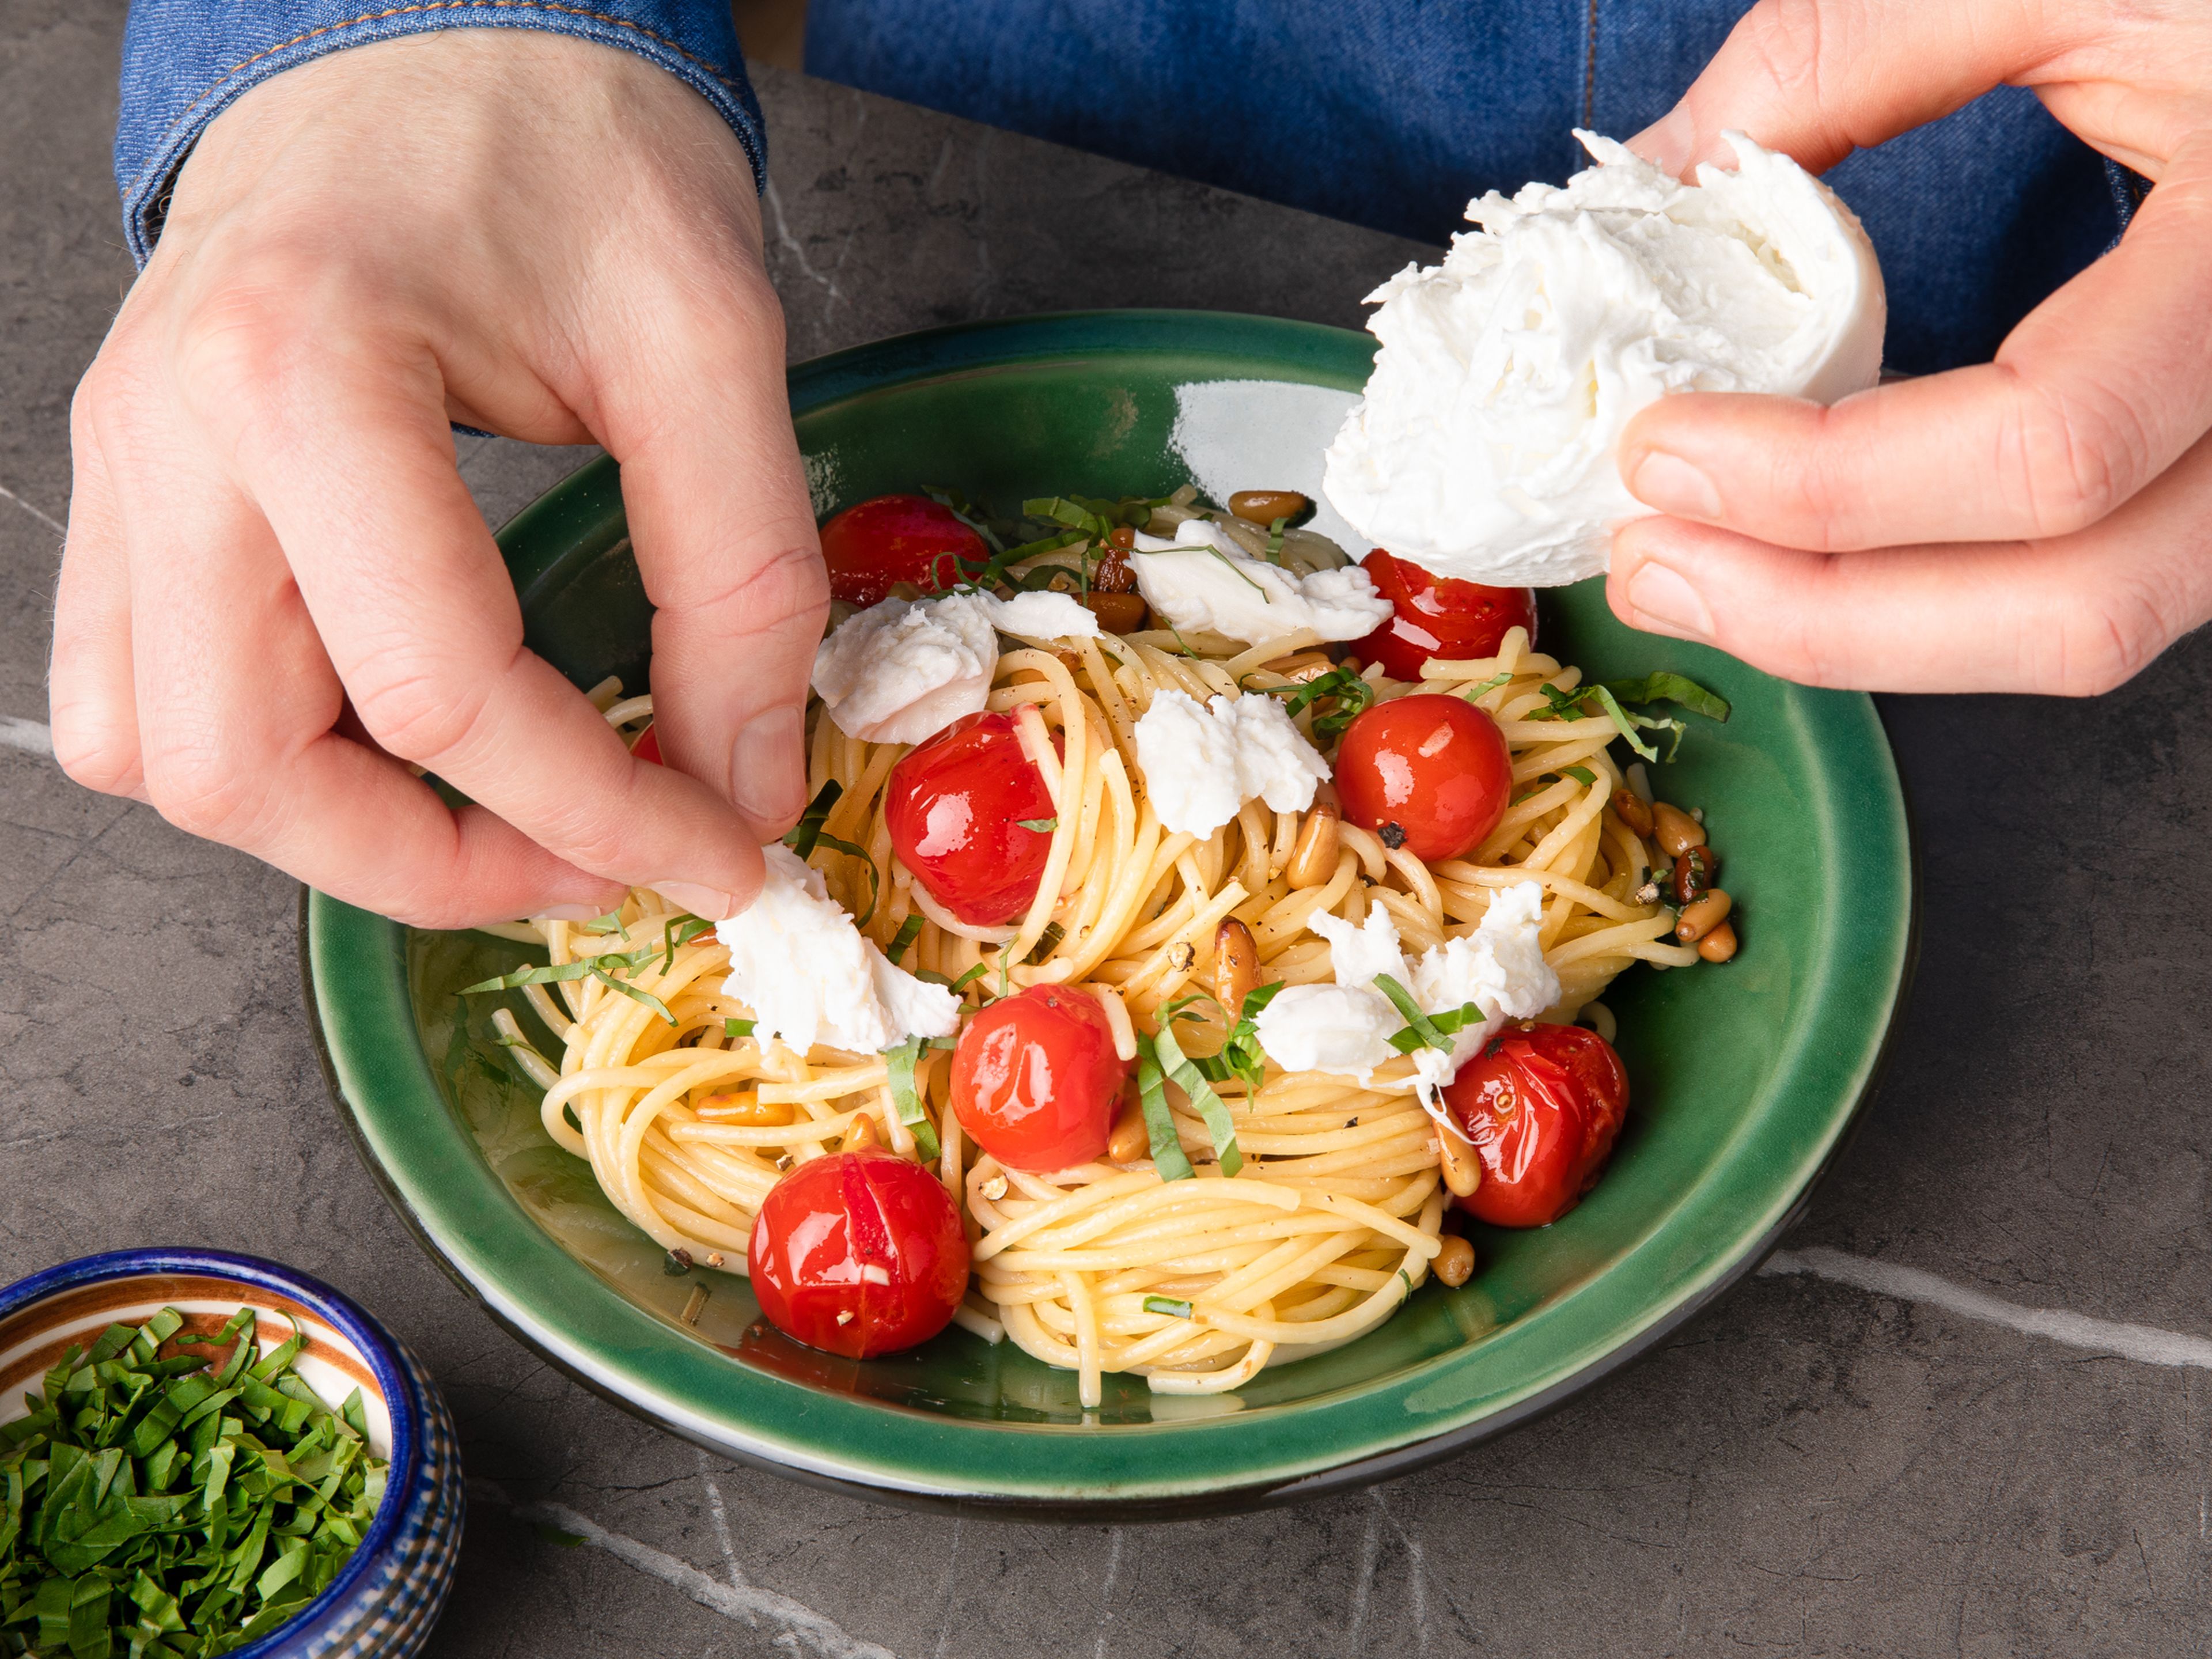 Spaghetti abgießen und die Tomaten aus dem Backofen nehmen. Restliche Butter in einer Pfanne über mittlerer Hitze schmelzen lassen und den gehackten Knoblauch ca. 1 Min. anbraten. Spaghetti und Tomaten dazugeben und vermengen. Mit Salz und Pfeffer abschmecken. Mozzarellakäse mit den Händen in kleine Stücke zerreißen und über den Spaghetti verteilen. Zum Schluss Pinienkerne und Basilikum darüber verteilen. Guten Appetit!